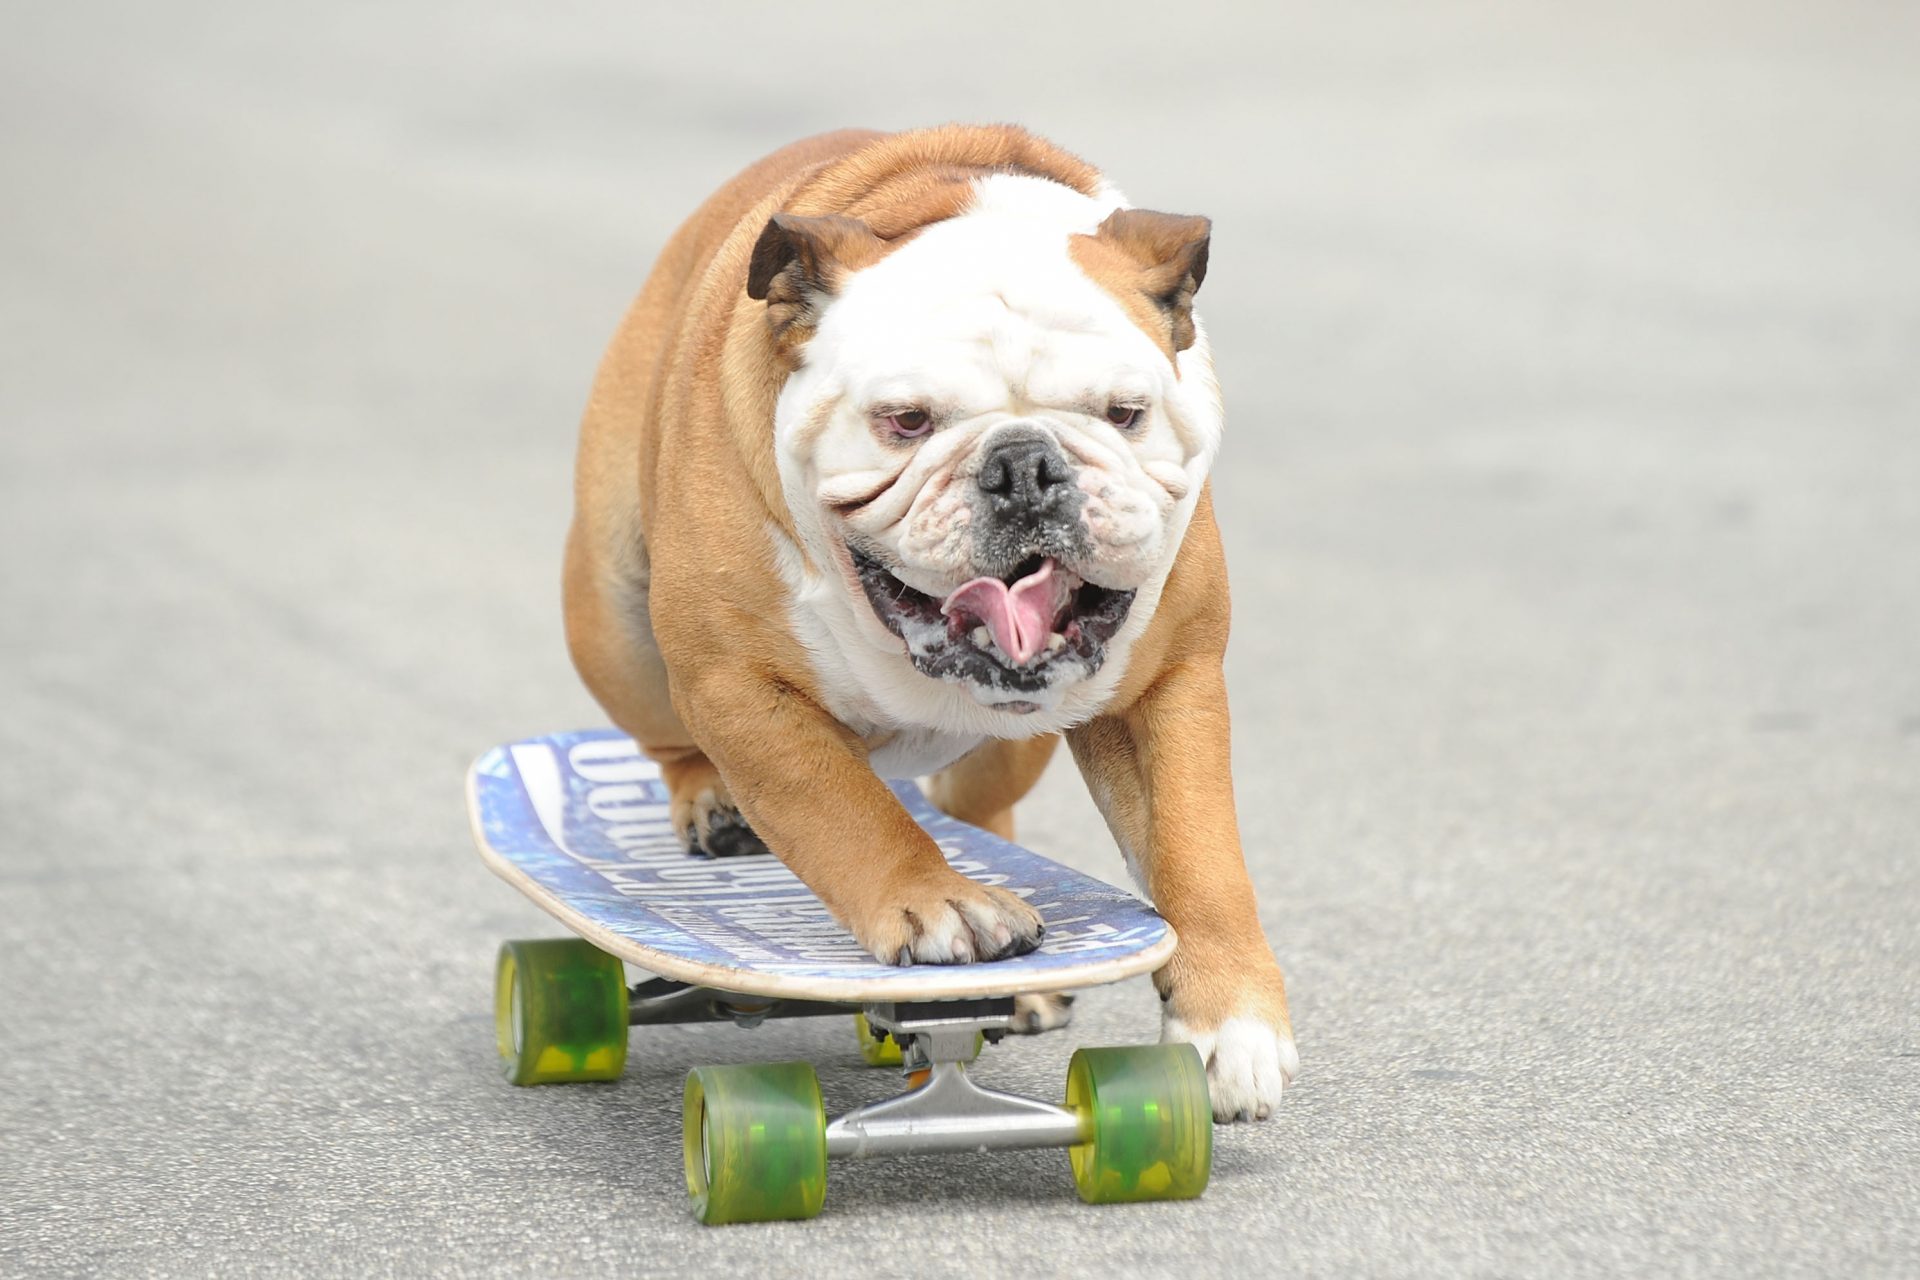 The skater dog